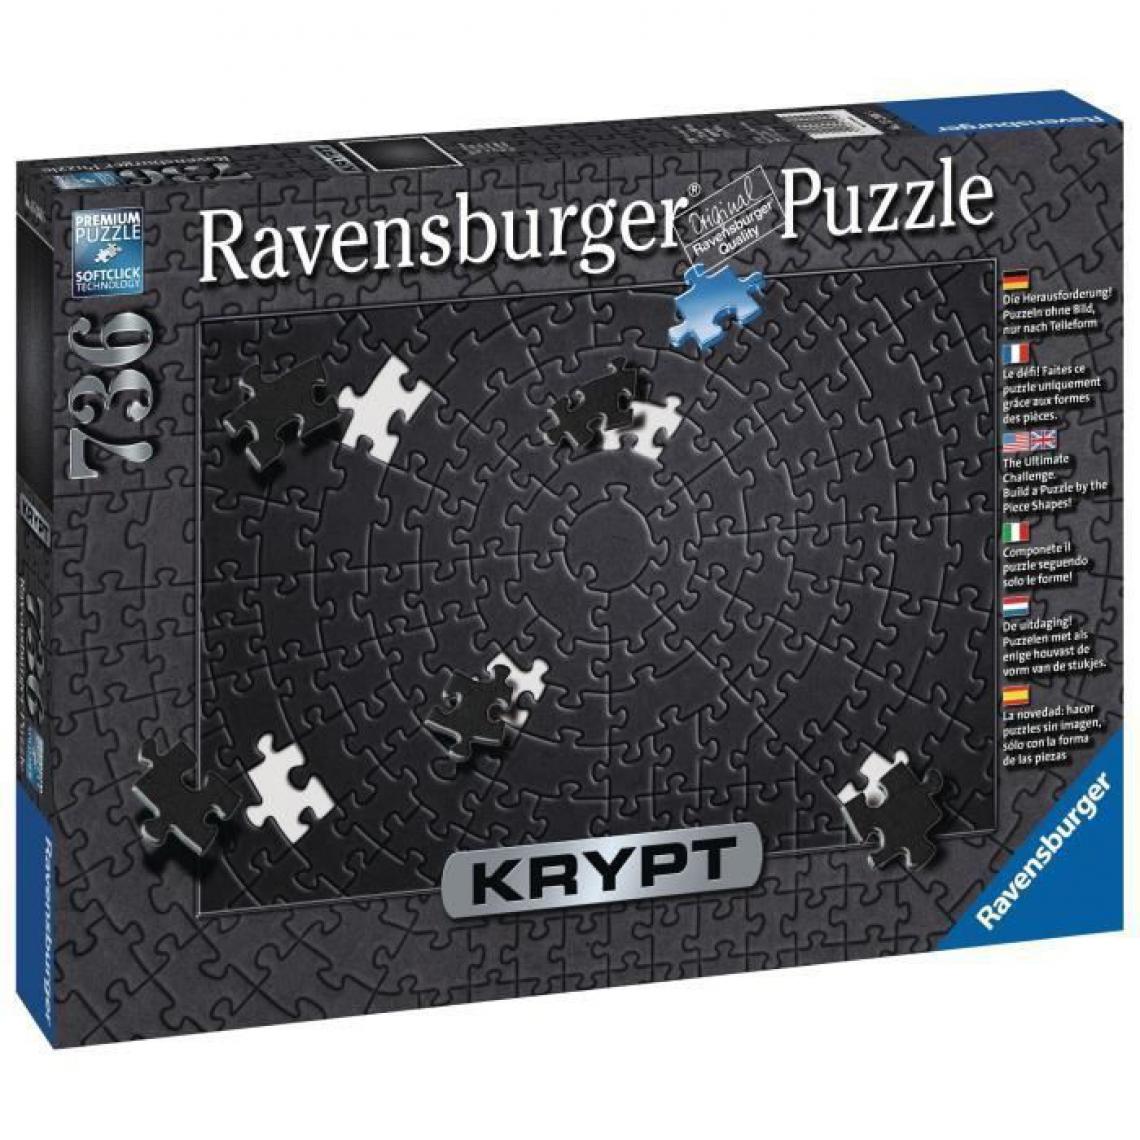 Ravensburger - Puzzle Krypt 736 p - Black - Animaux